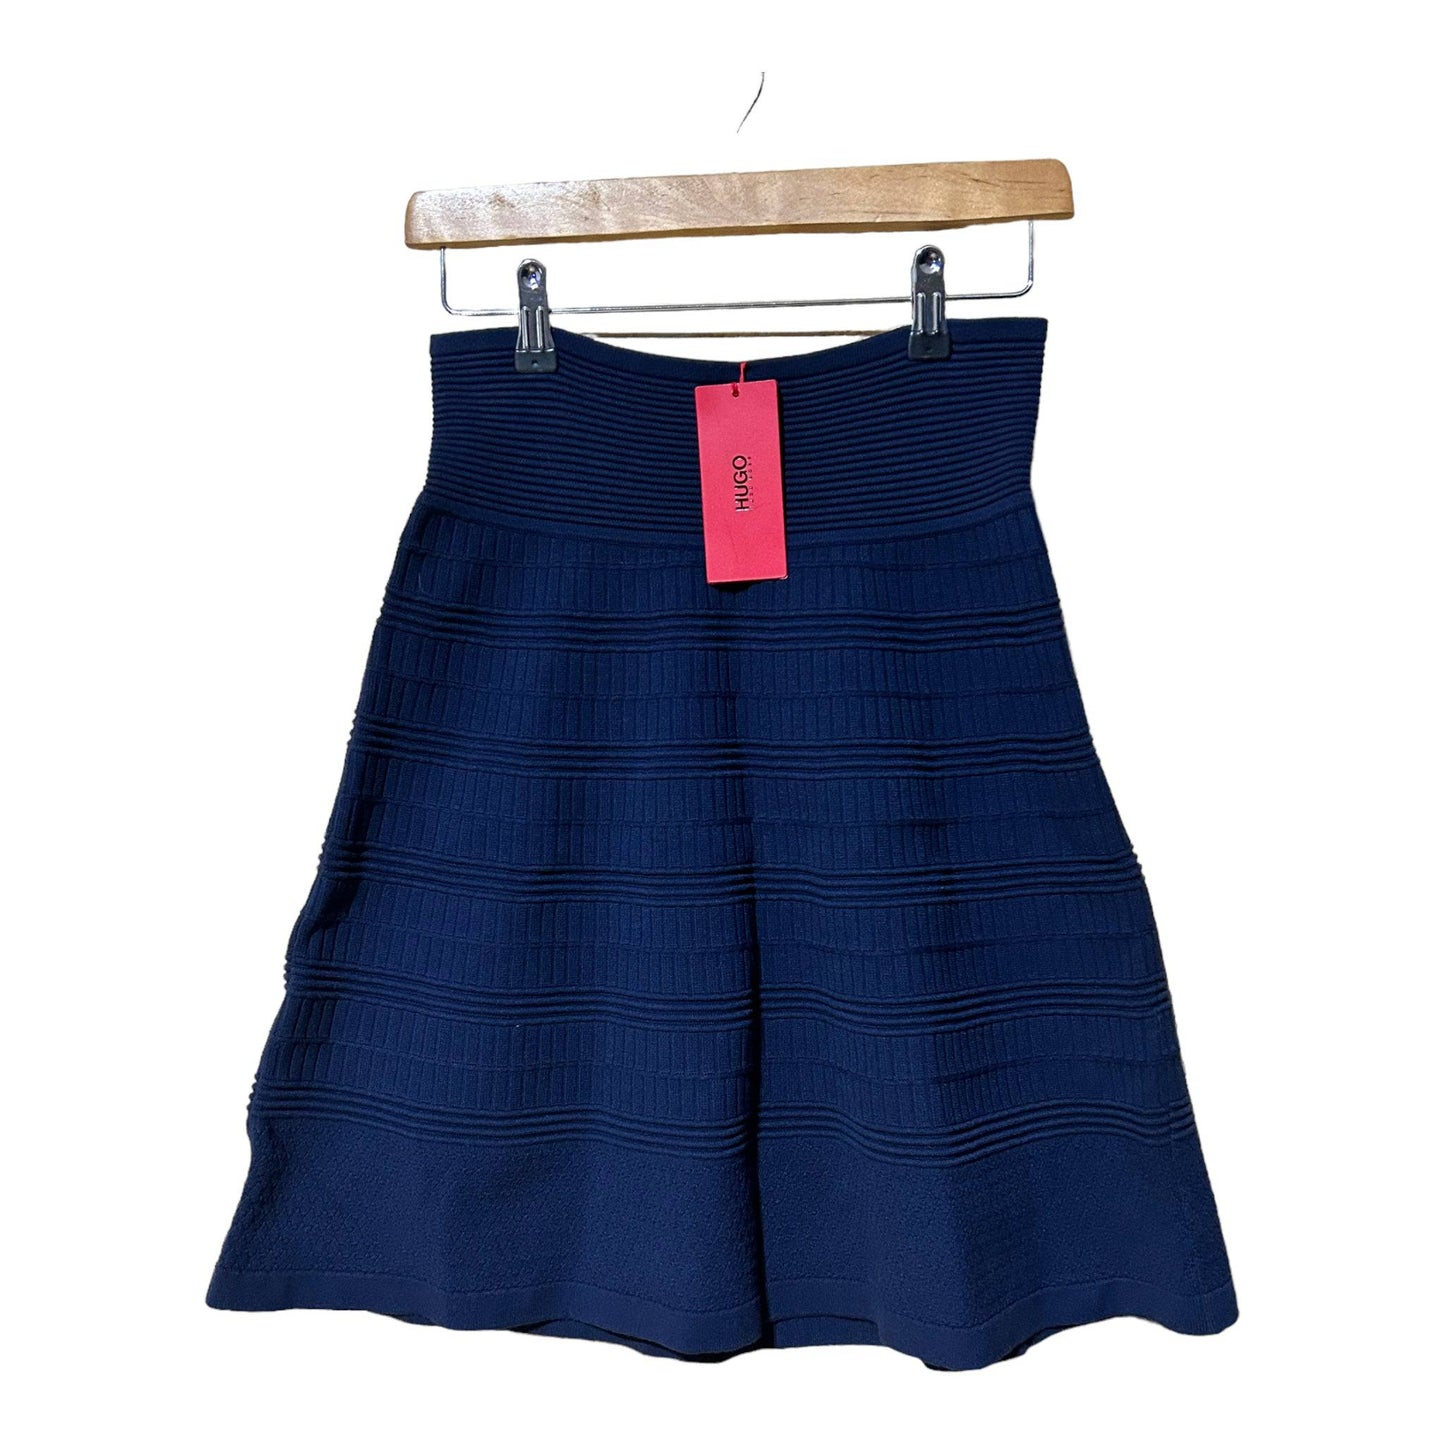 Hugo Boss Shanahan Knit Skirt - Recurring.Life